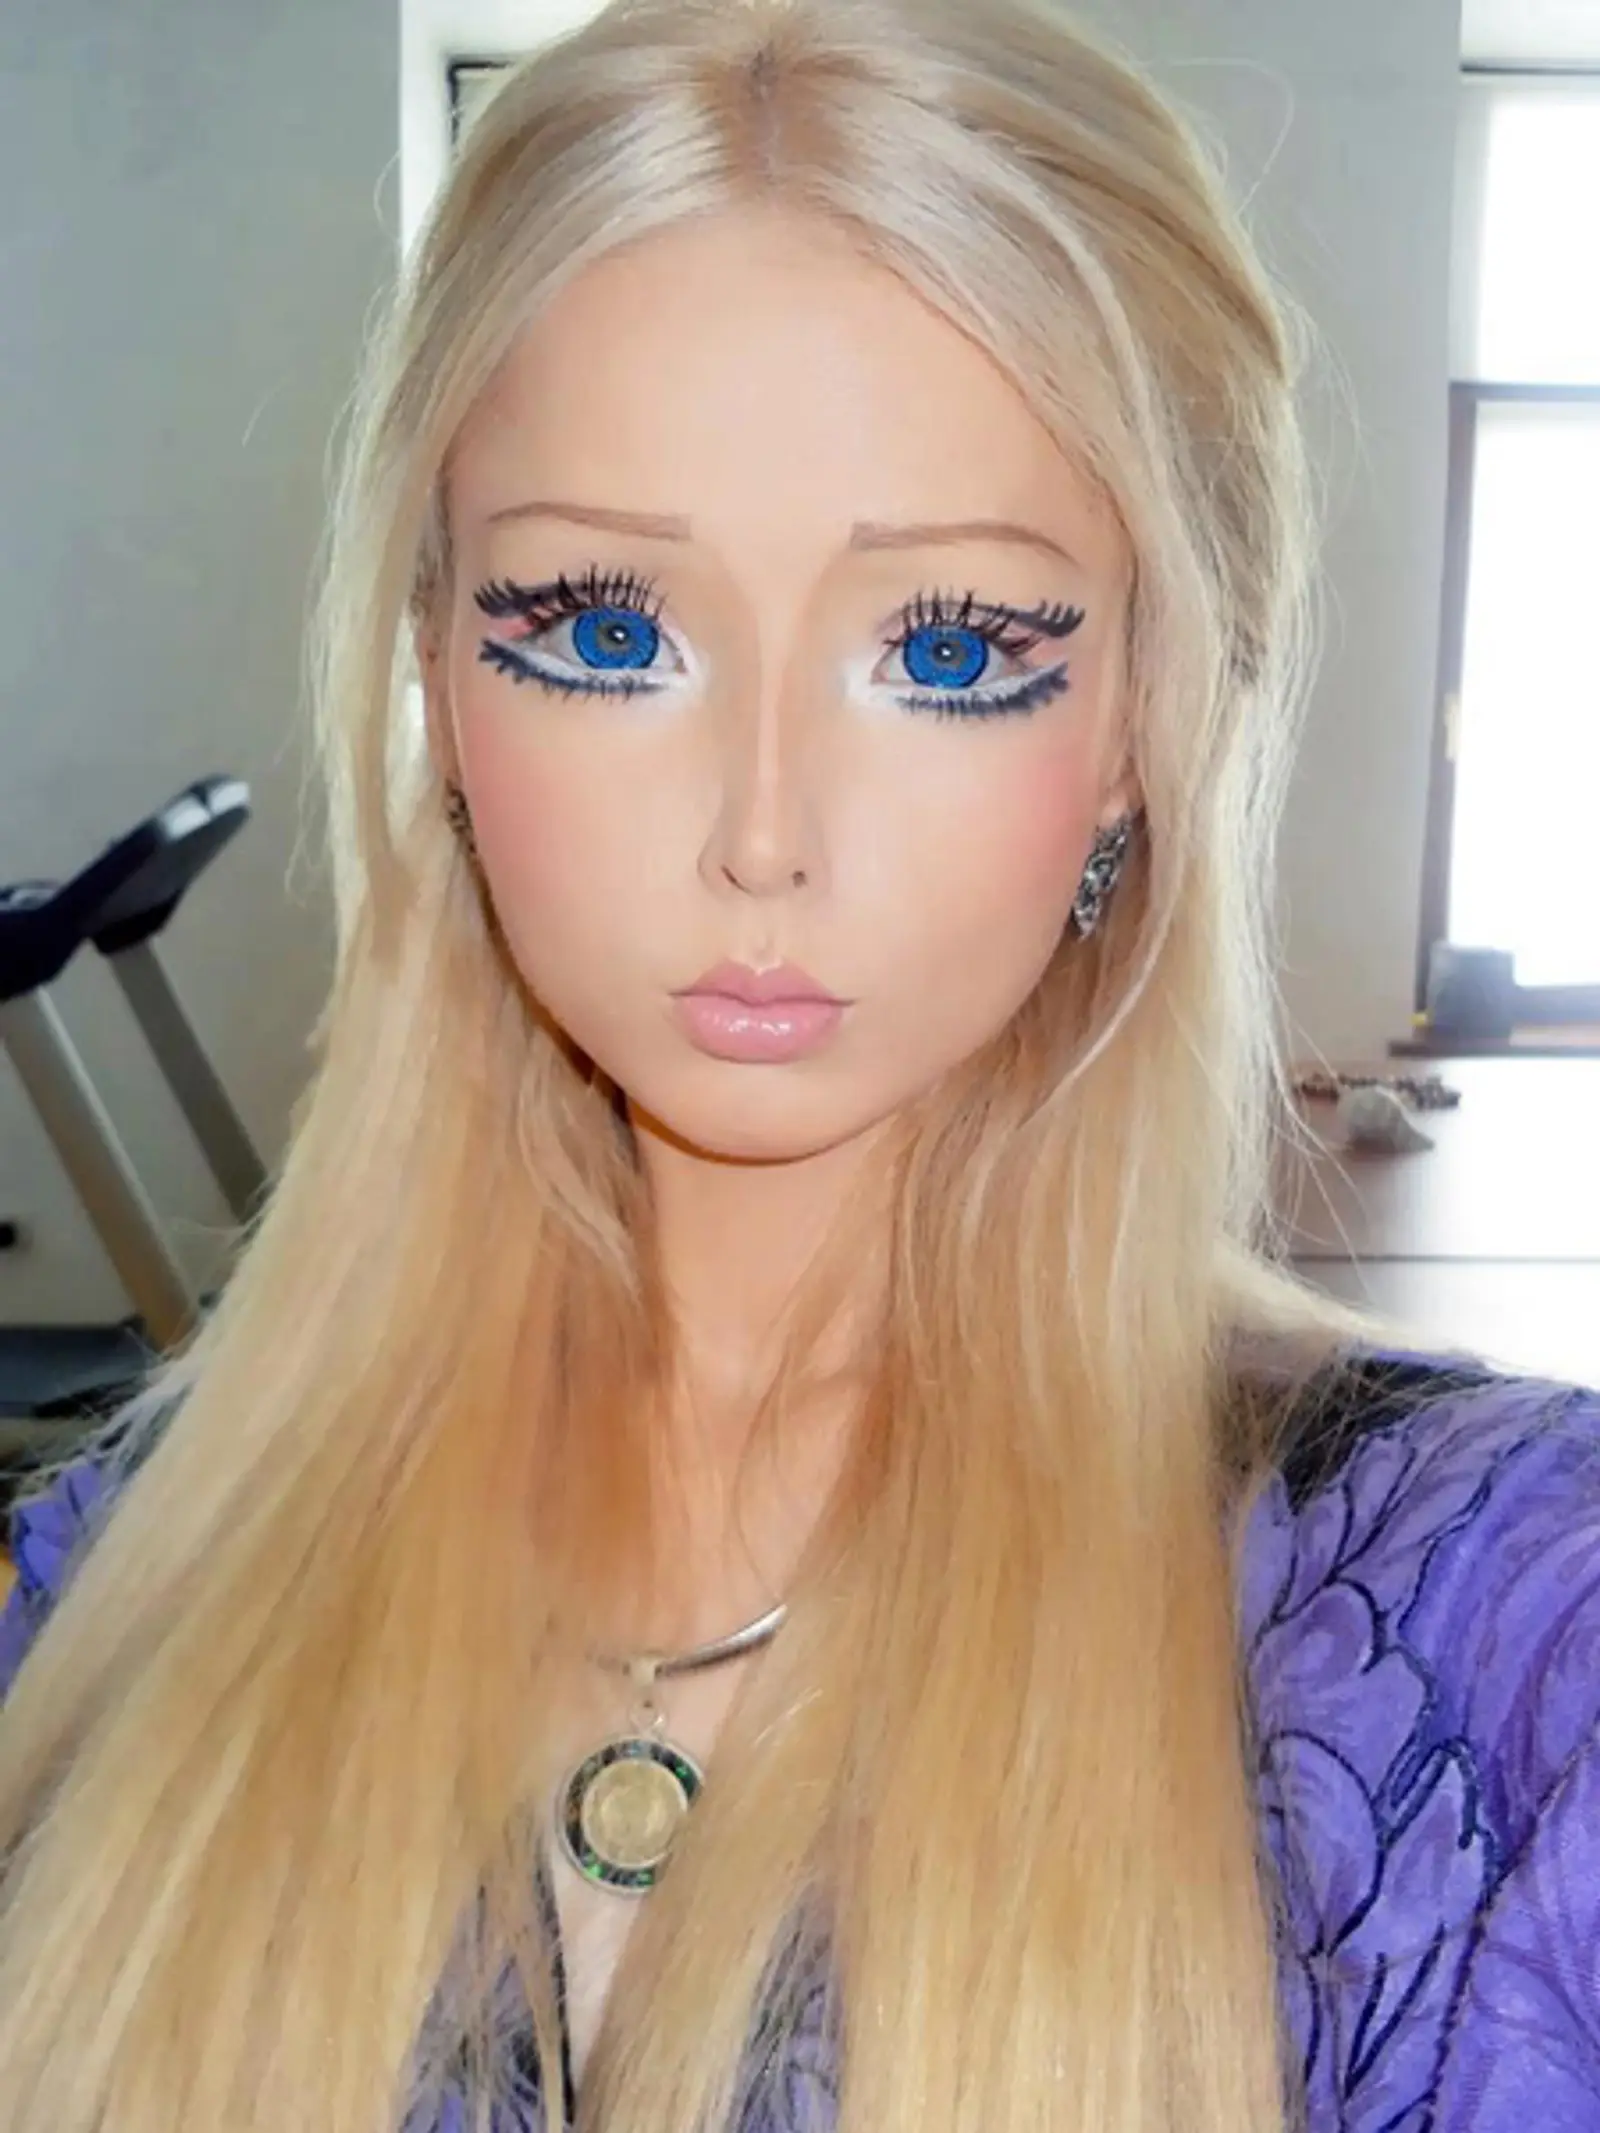 Kiezen Materialisme Wiskundige Valeria Lukyanova: Die echt unheimliche "Real Life"-Barbie | InTouch